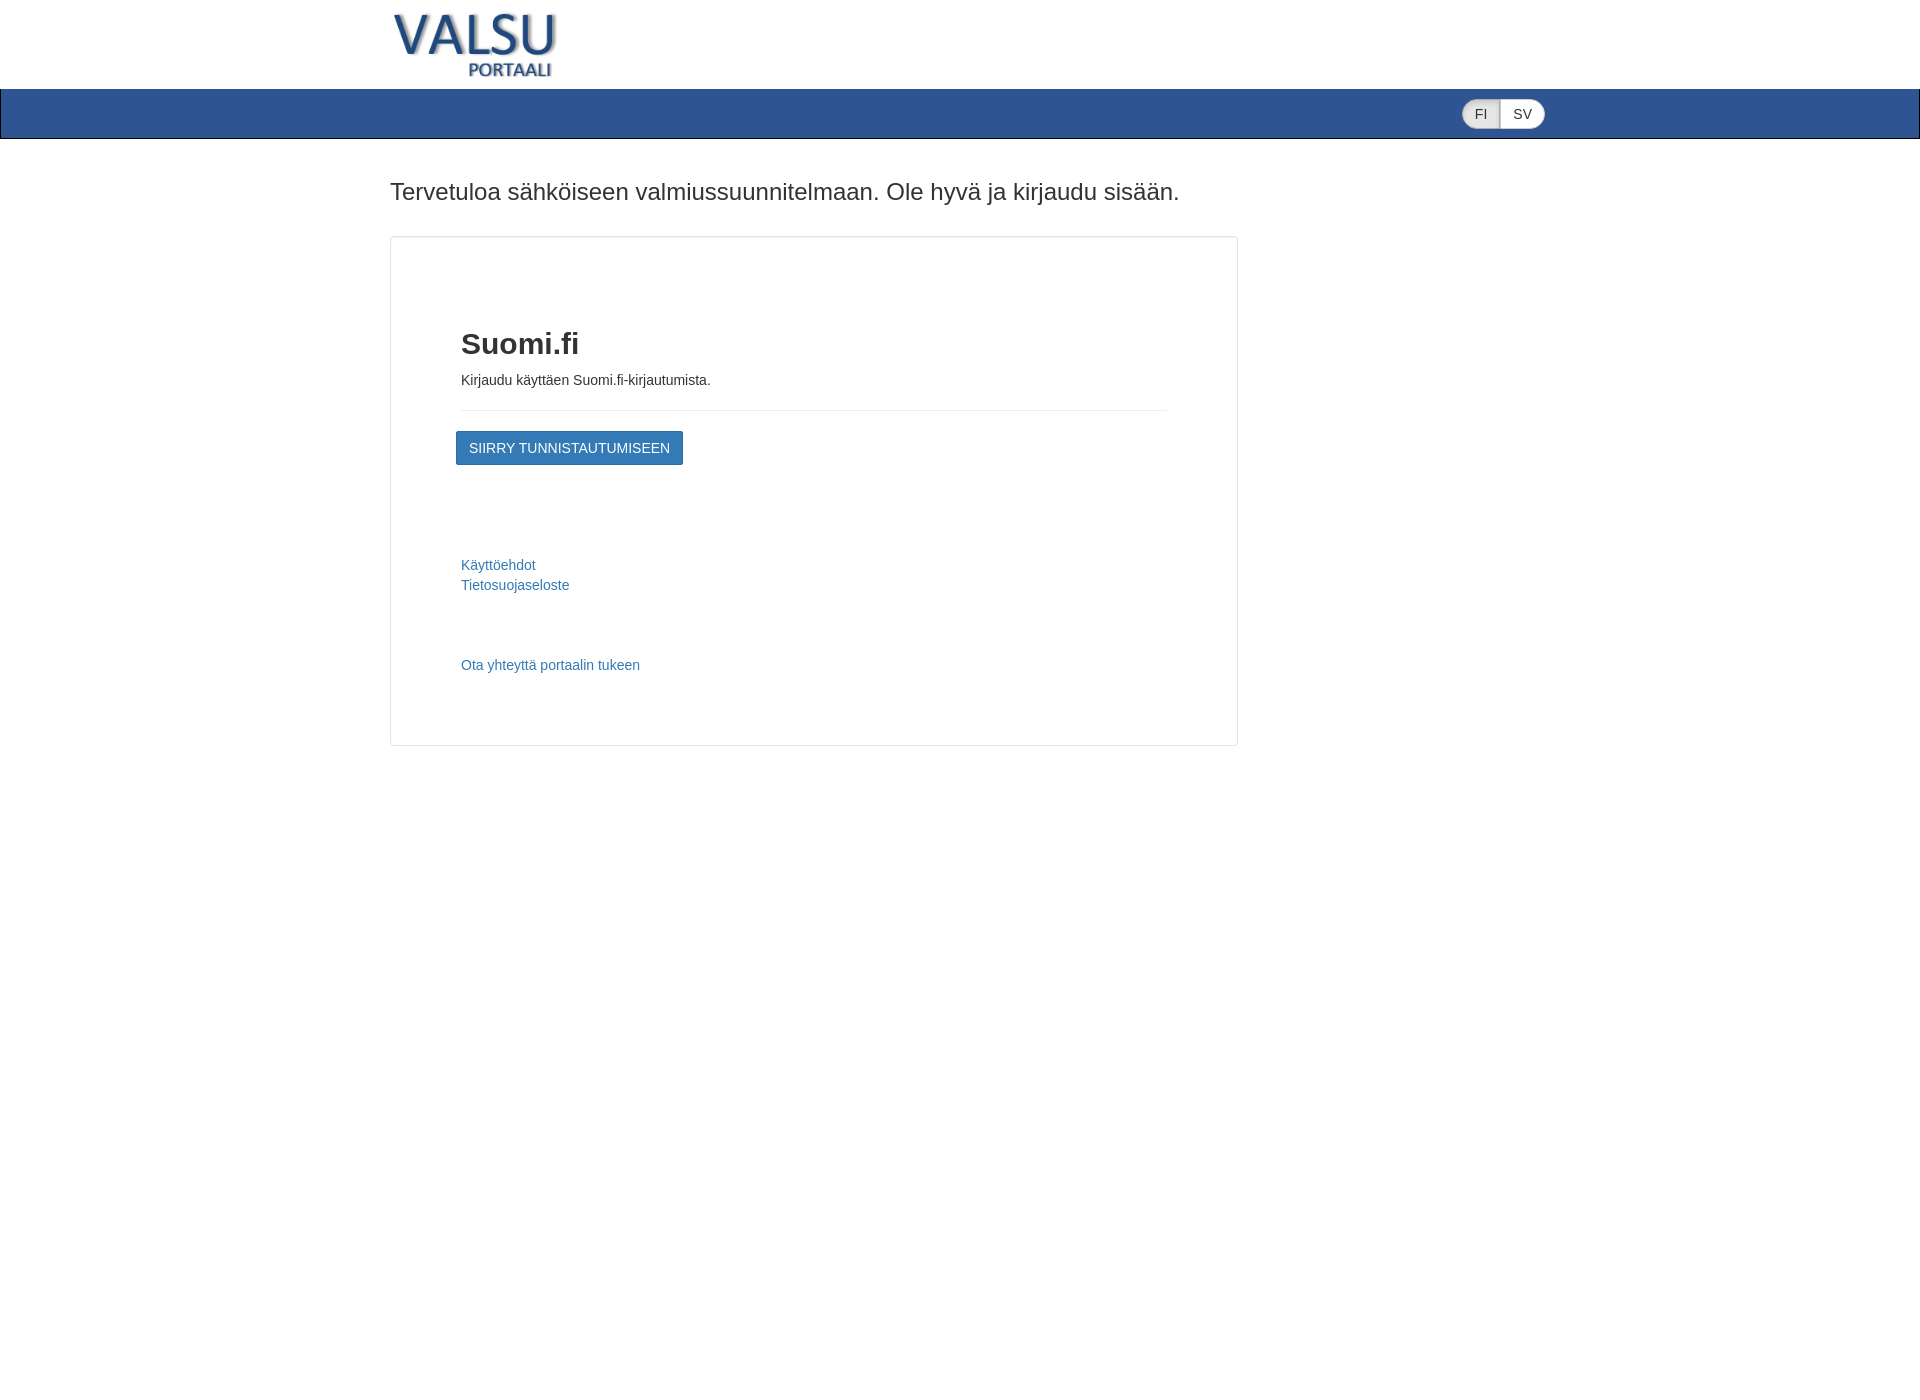 Skärmdump för valsu.fi